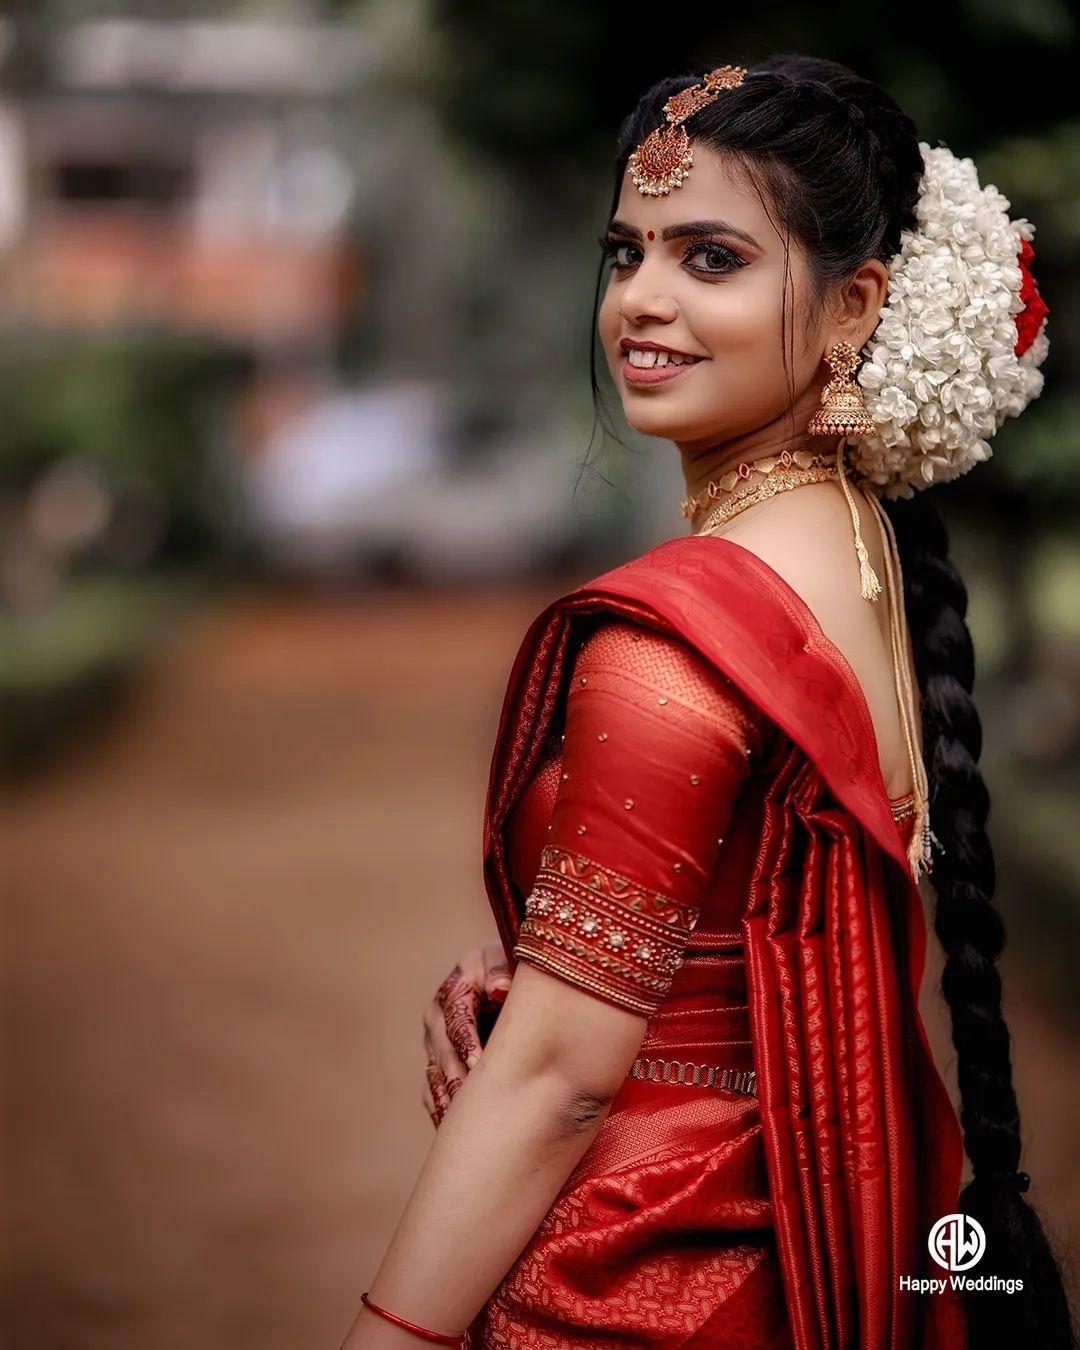 Kerala Hindu Bride | Indian bride poses, Kerala hindu bride, Hindu bride